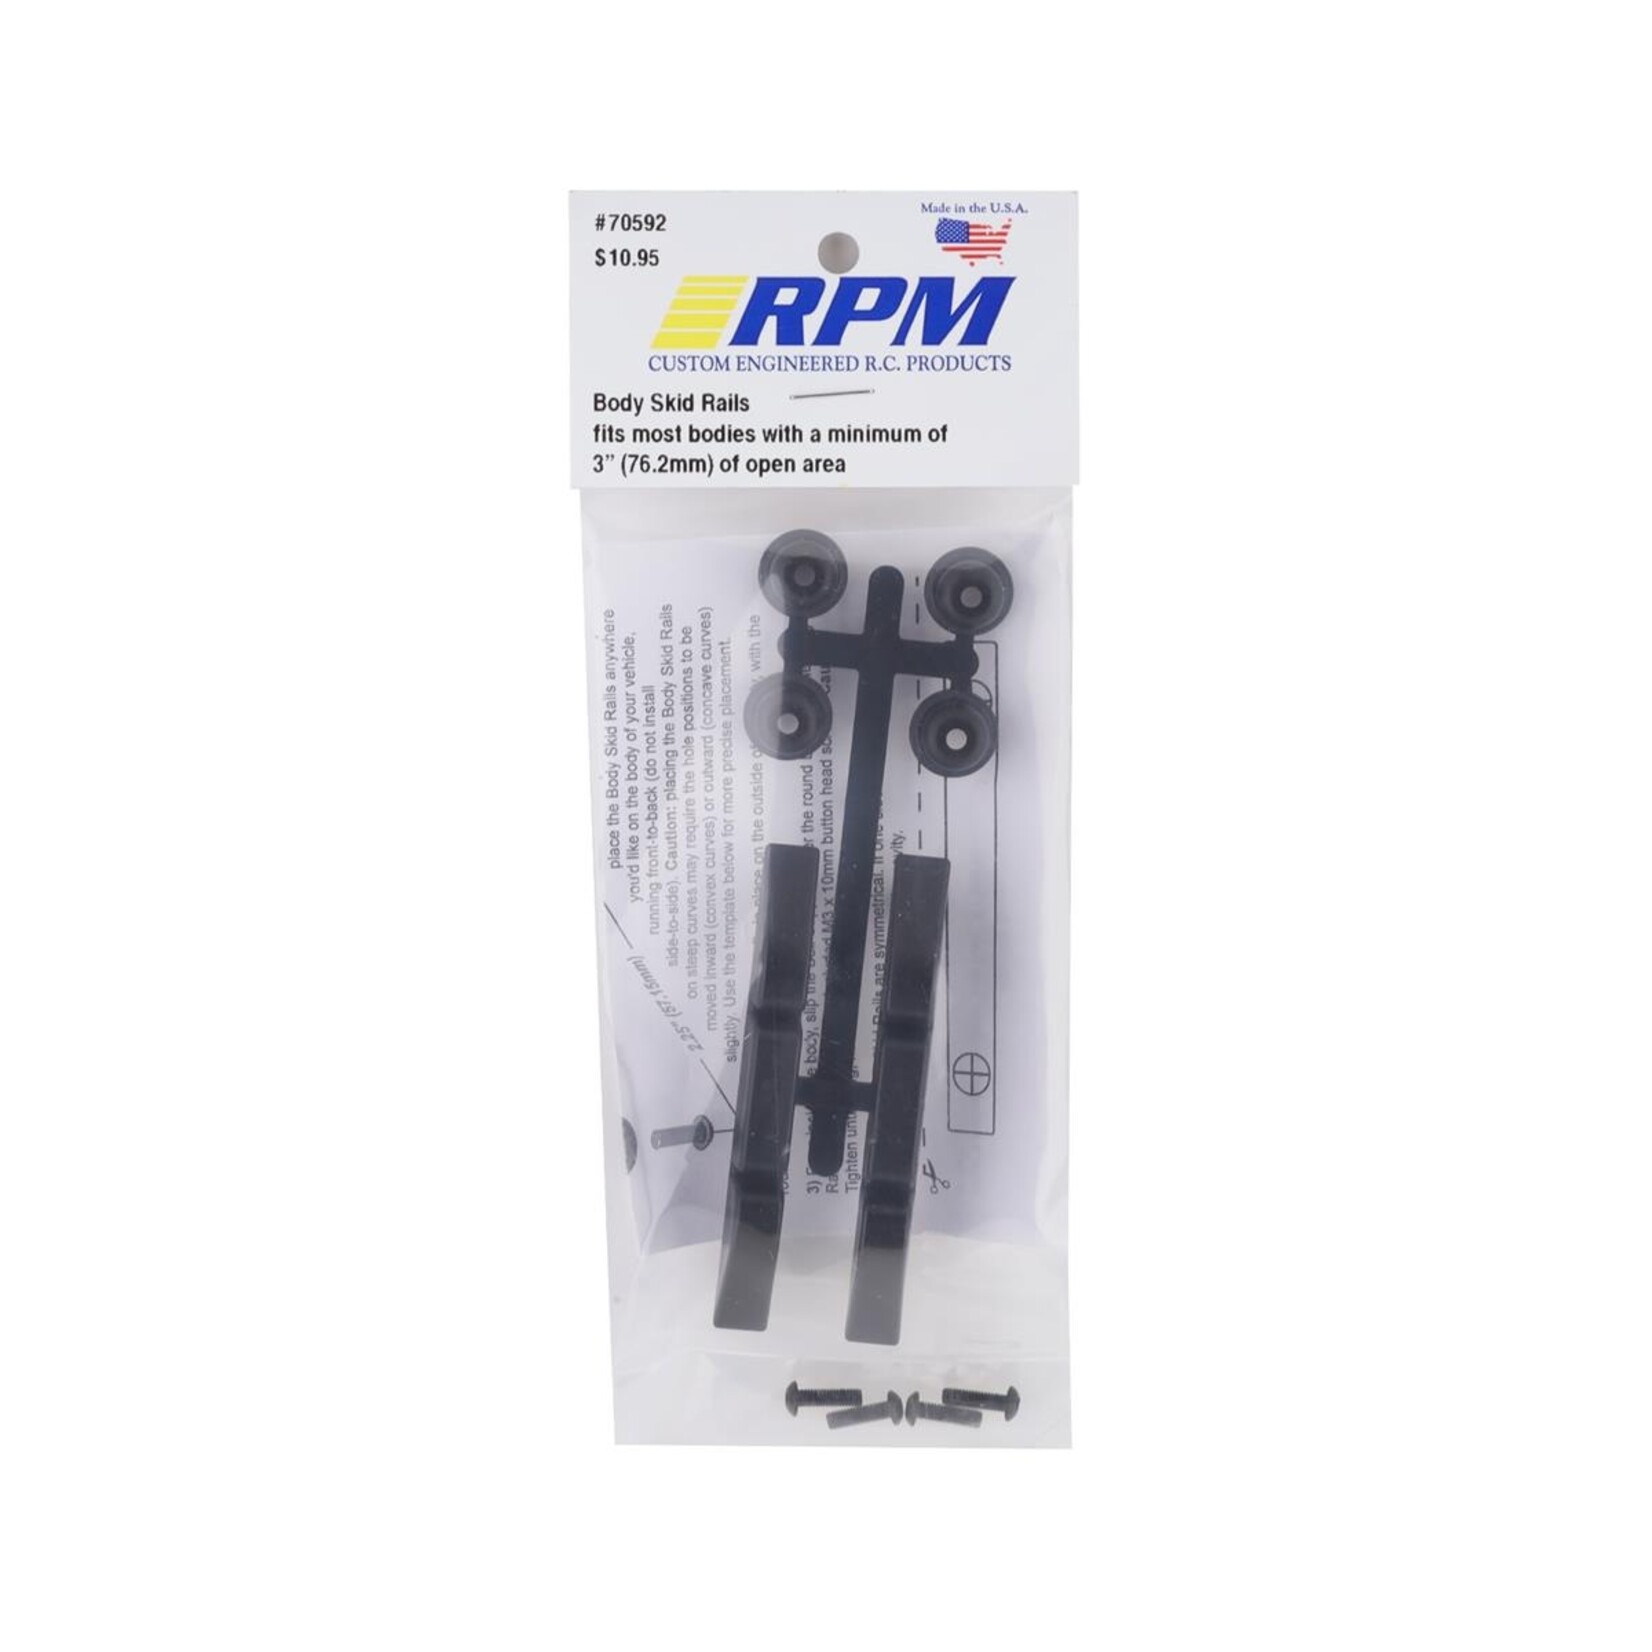 RPM RPM Body Skid Rails #70592